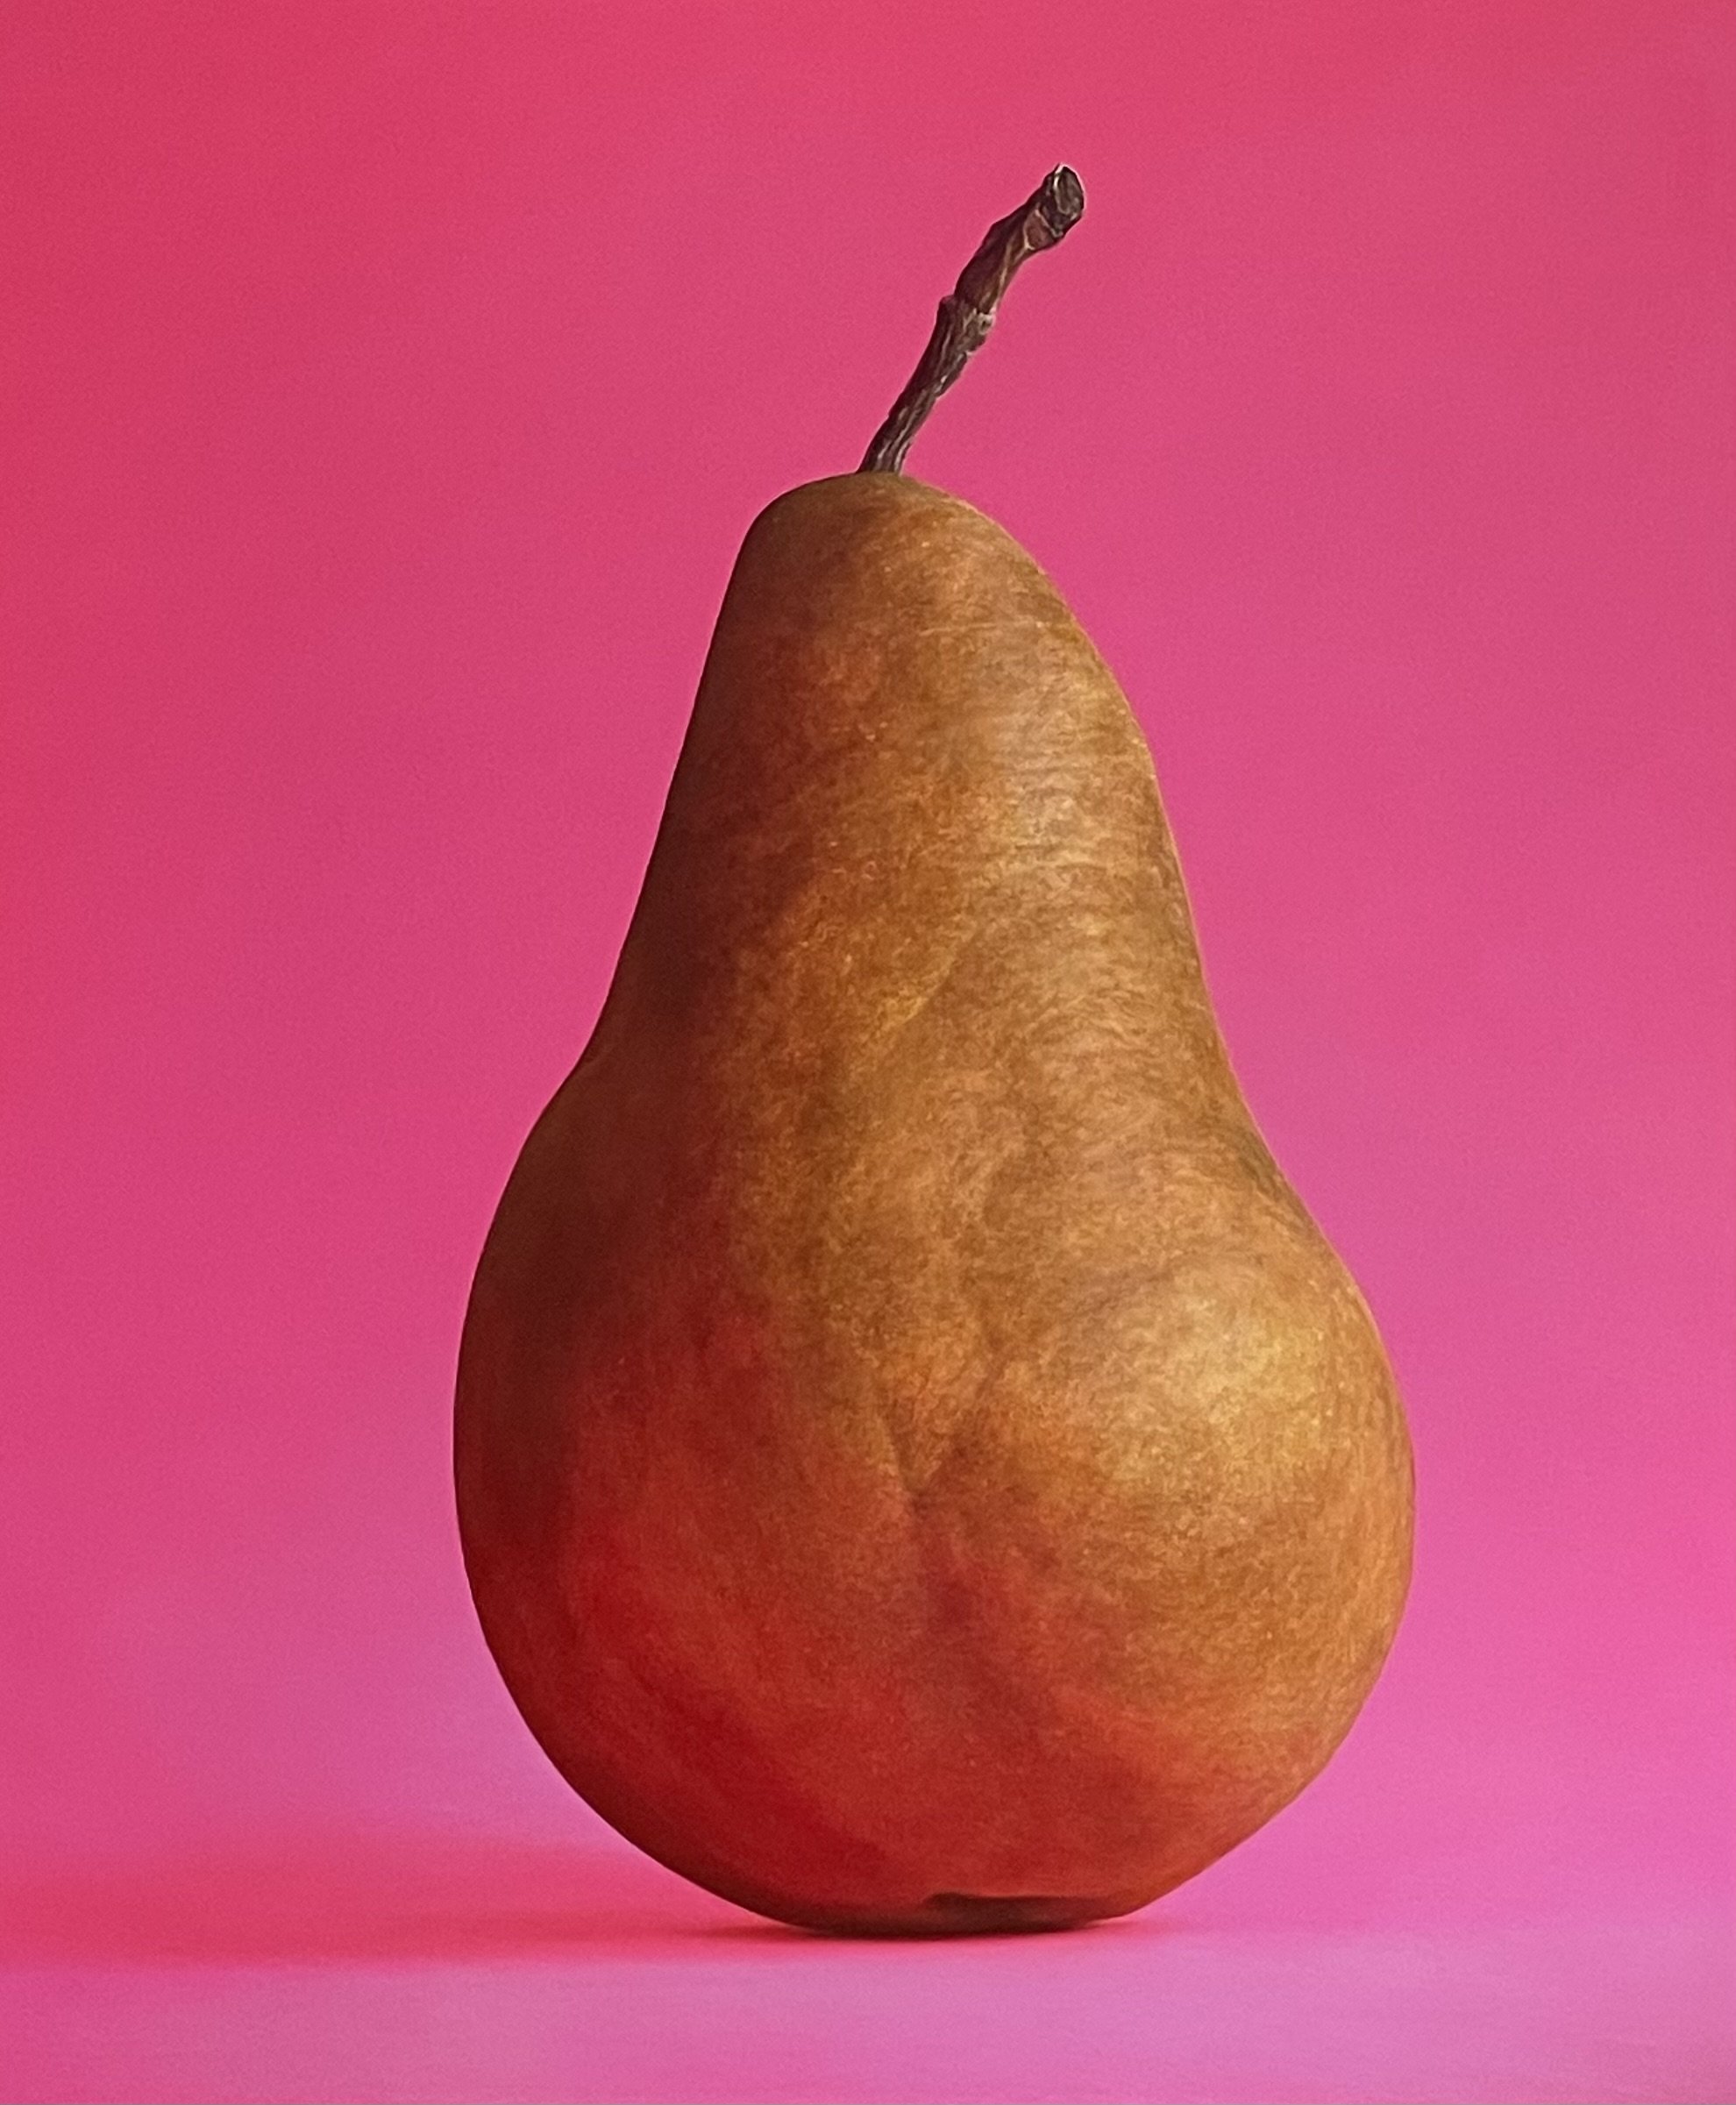 Bosc Pear on Fuchsia (sold)